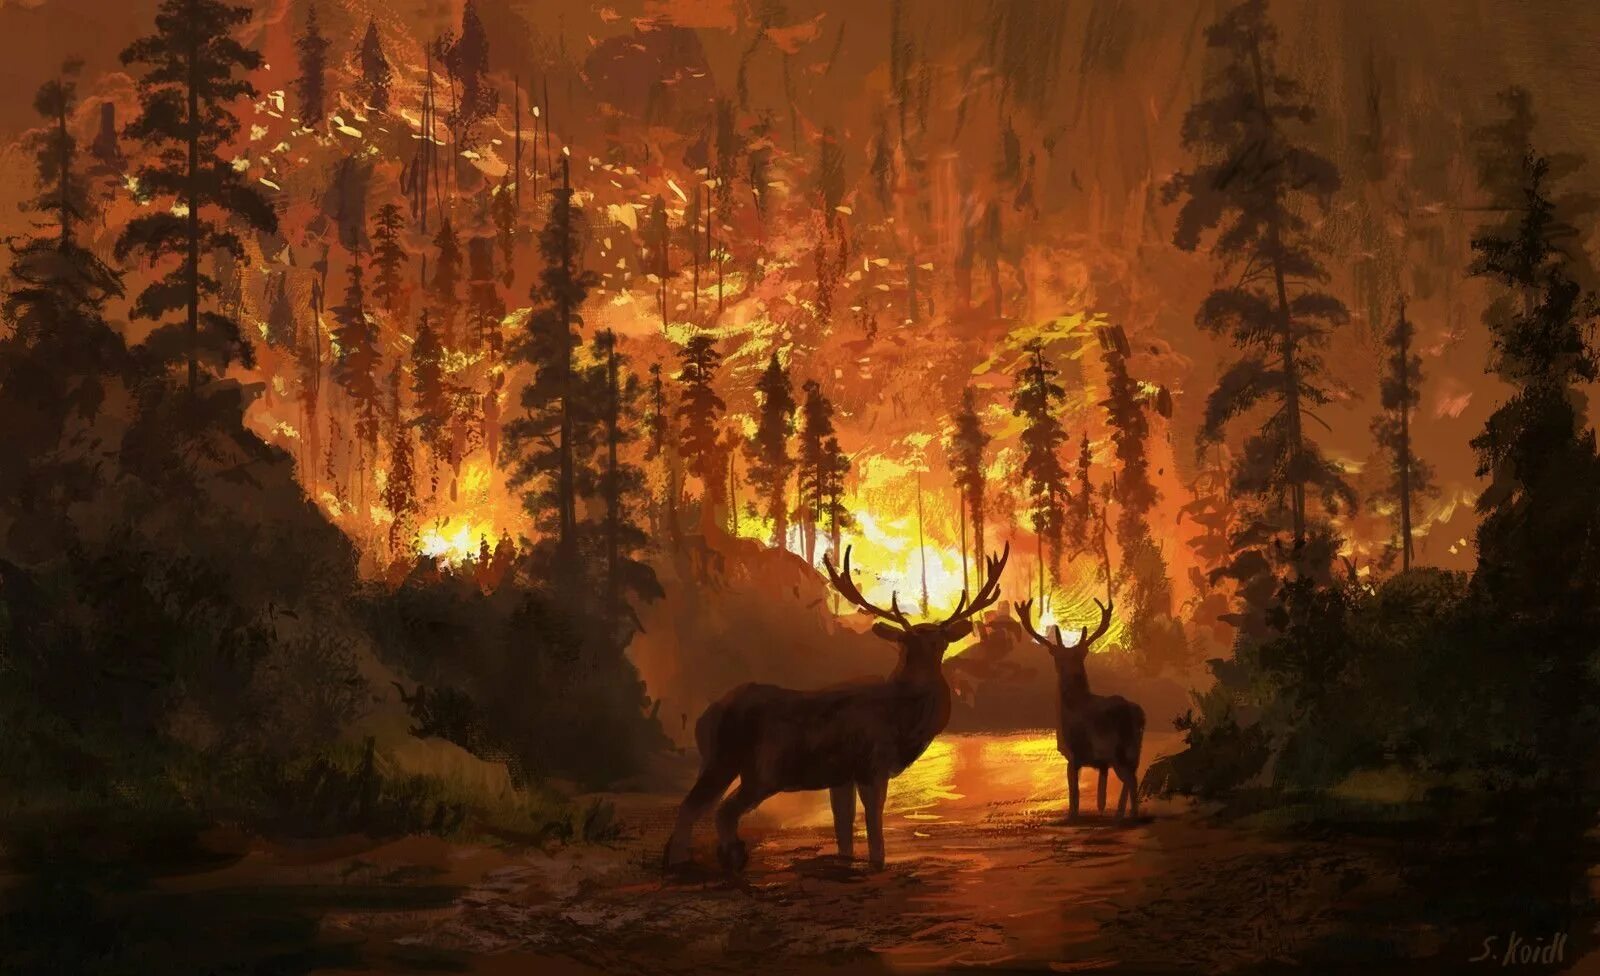 Горящий лес с животными. Пожар в лесу. Пожар в лесу и звери. Пожар в лесу арт.